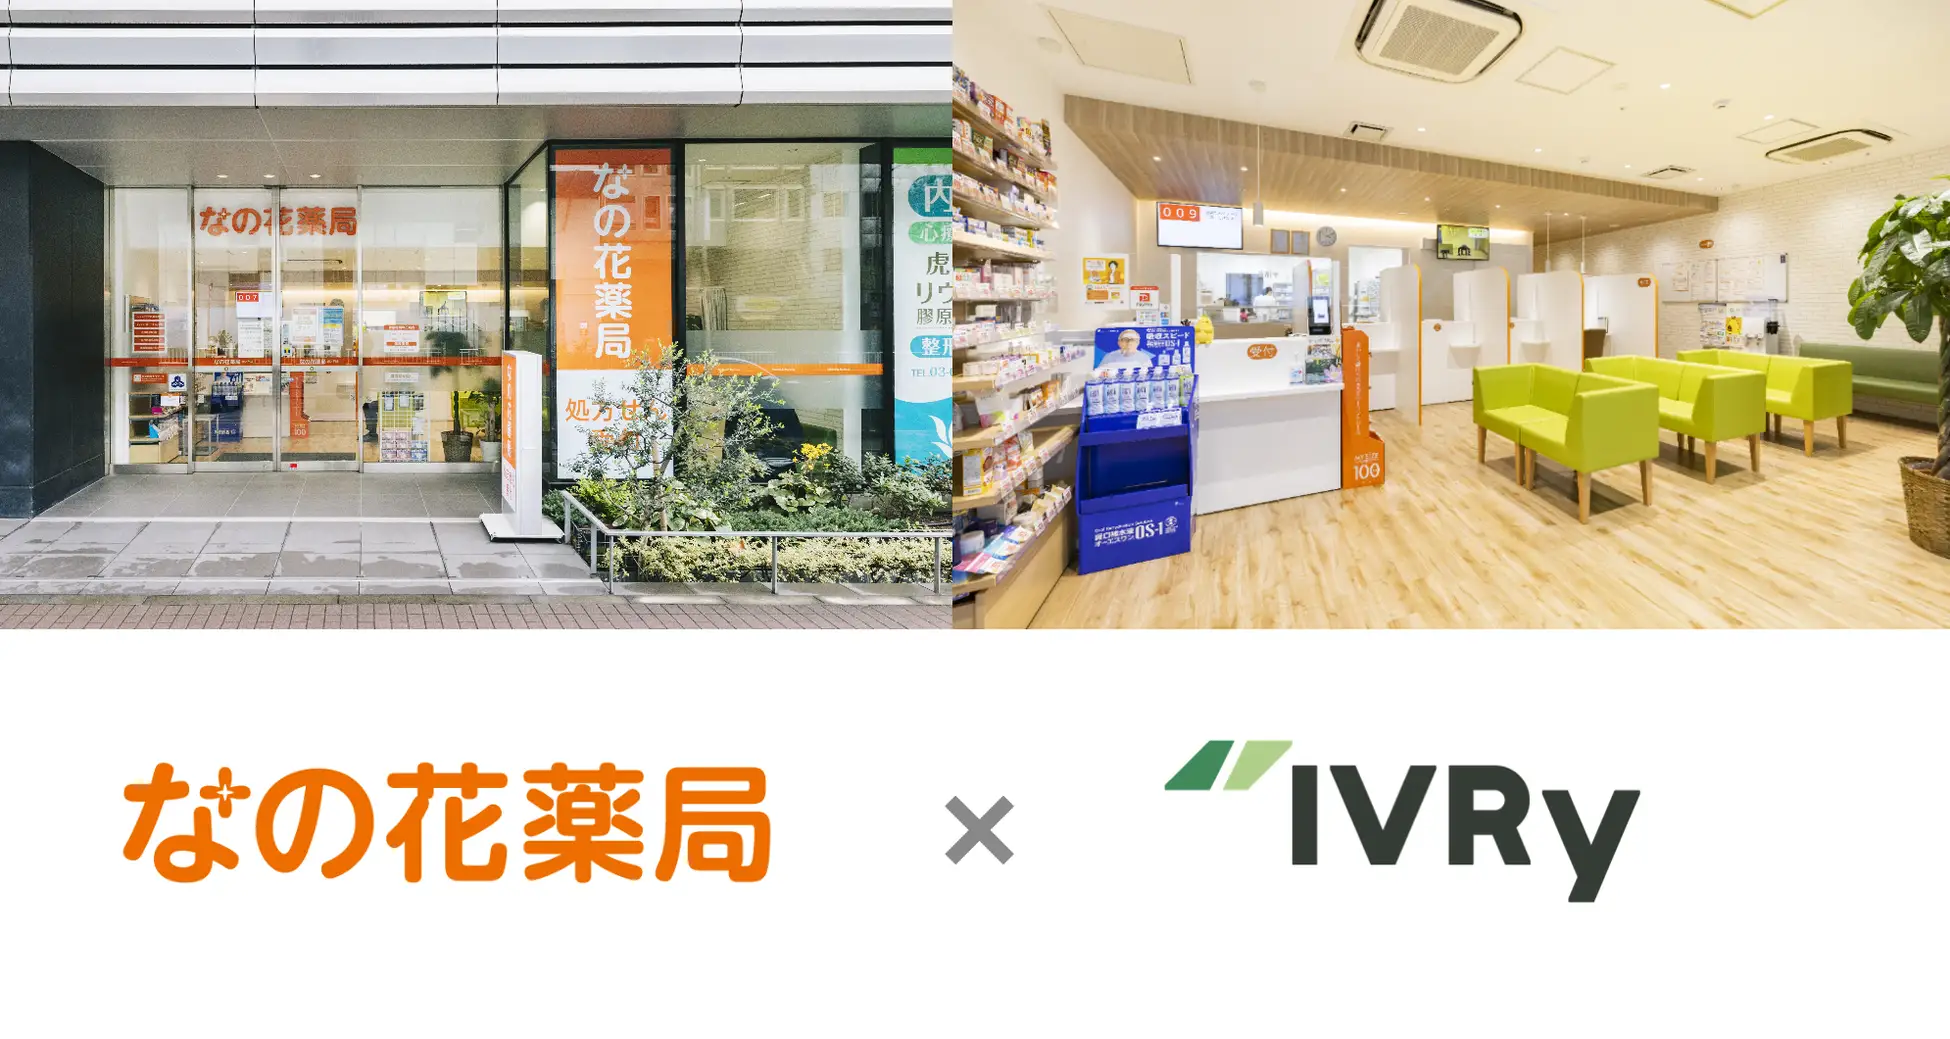 なの花薬局、東日本エリア100店舗以上に電話自動応答サービス「IVRy（アイブリー）」を導入し、電話DXによる業務効率化を推進